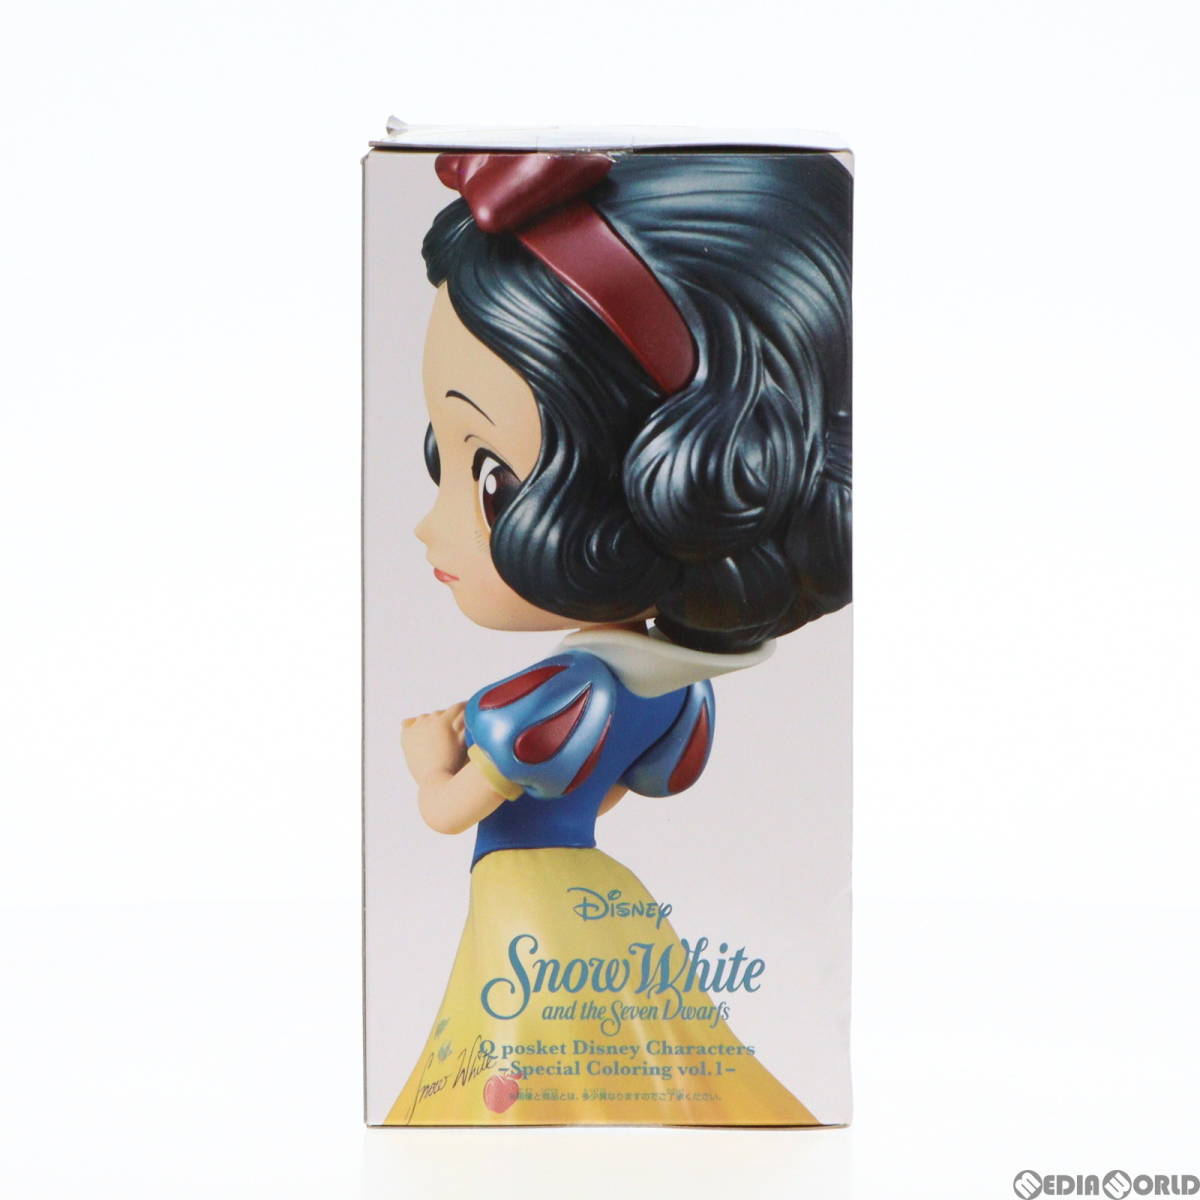 【中古】[FIG]白雪姫 Q posket Disney Characters -Special Coloring vol.1- フィギュア プライズ(37346) バンプレスト(61716300)_画像4